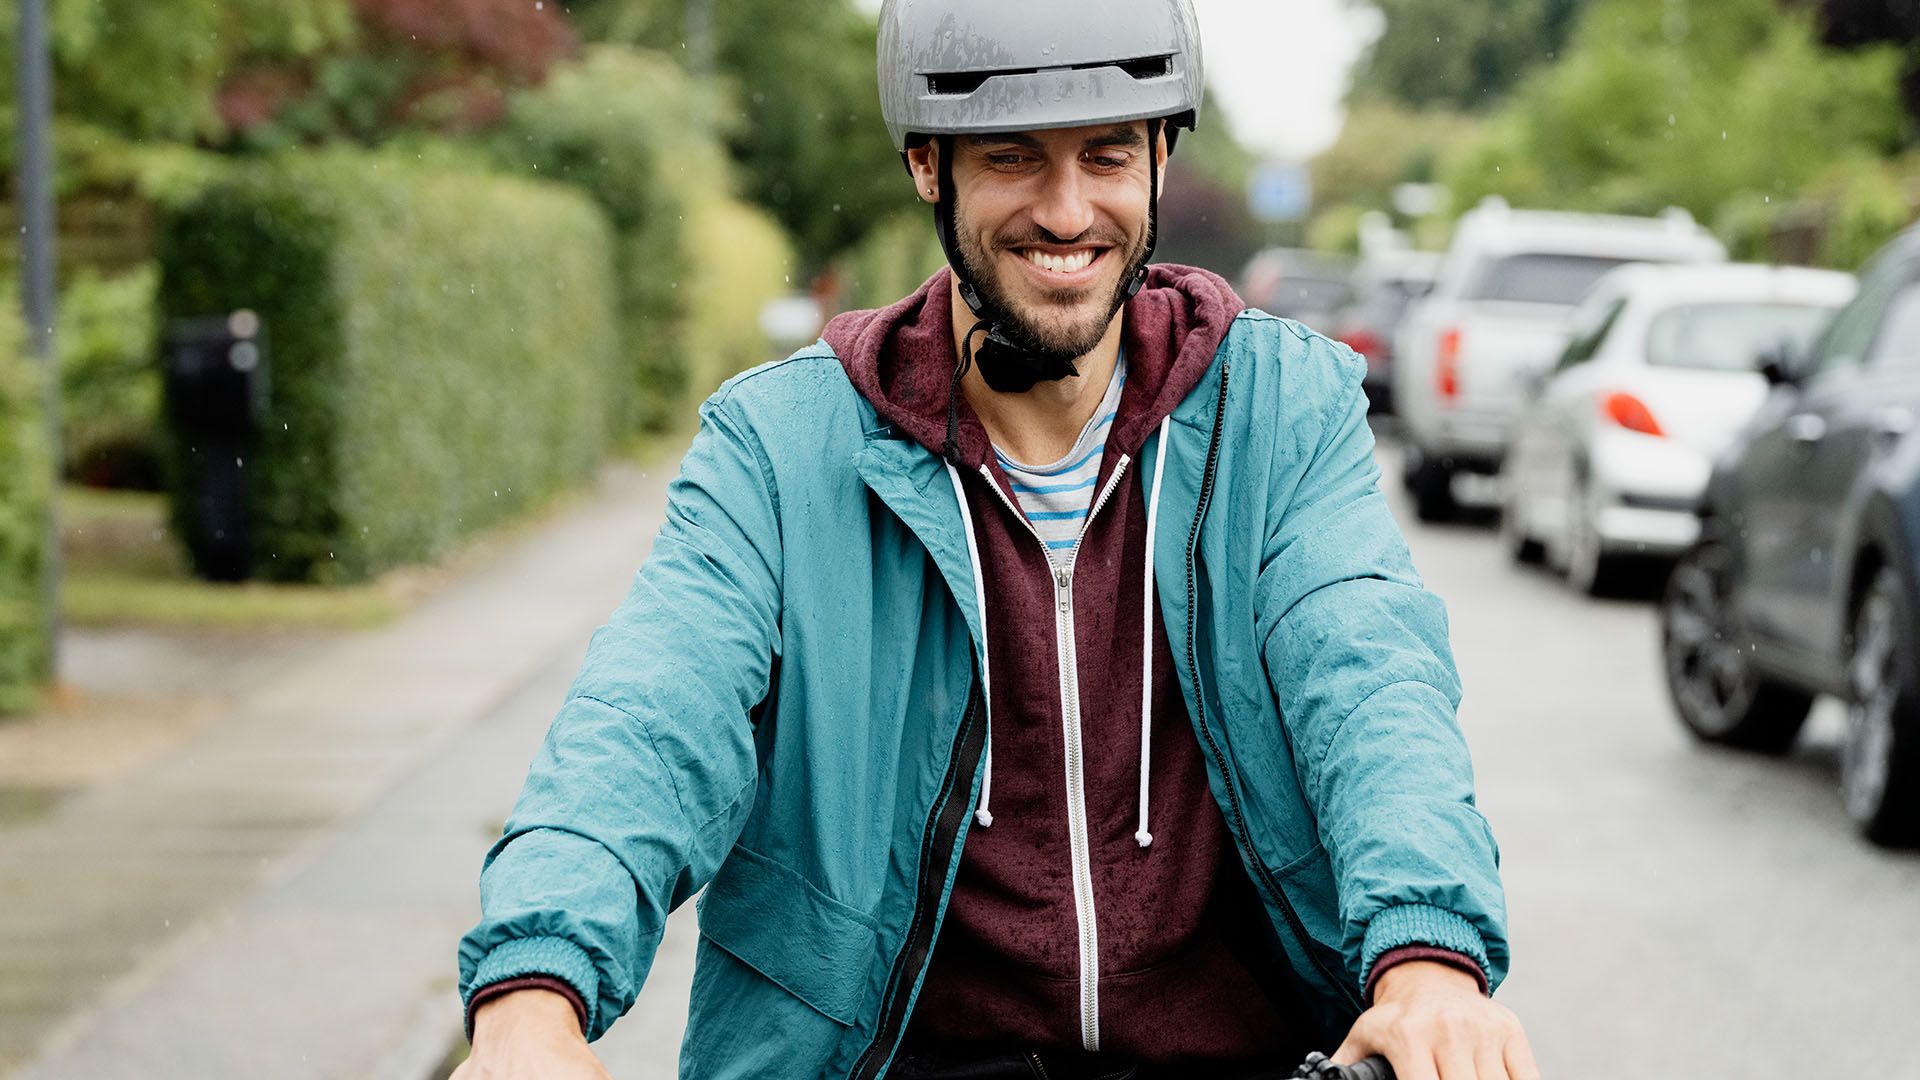 Mand på cykel, som er dækket af indboforsikringen, mens manden er dækket af ulykkesforsikringen ved cykelstyrt. 